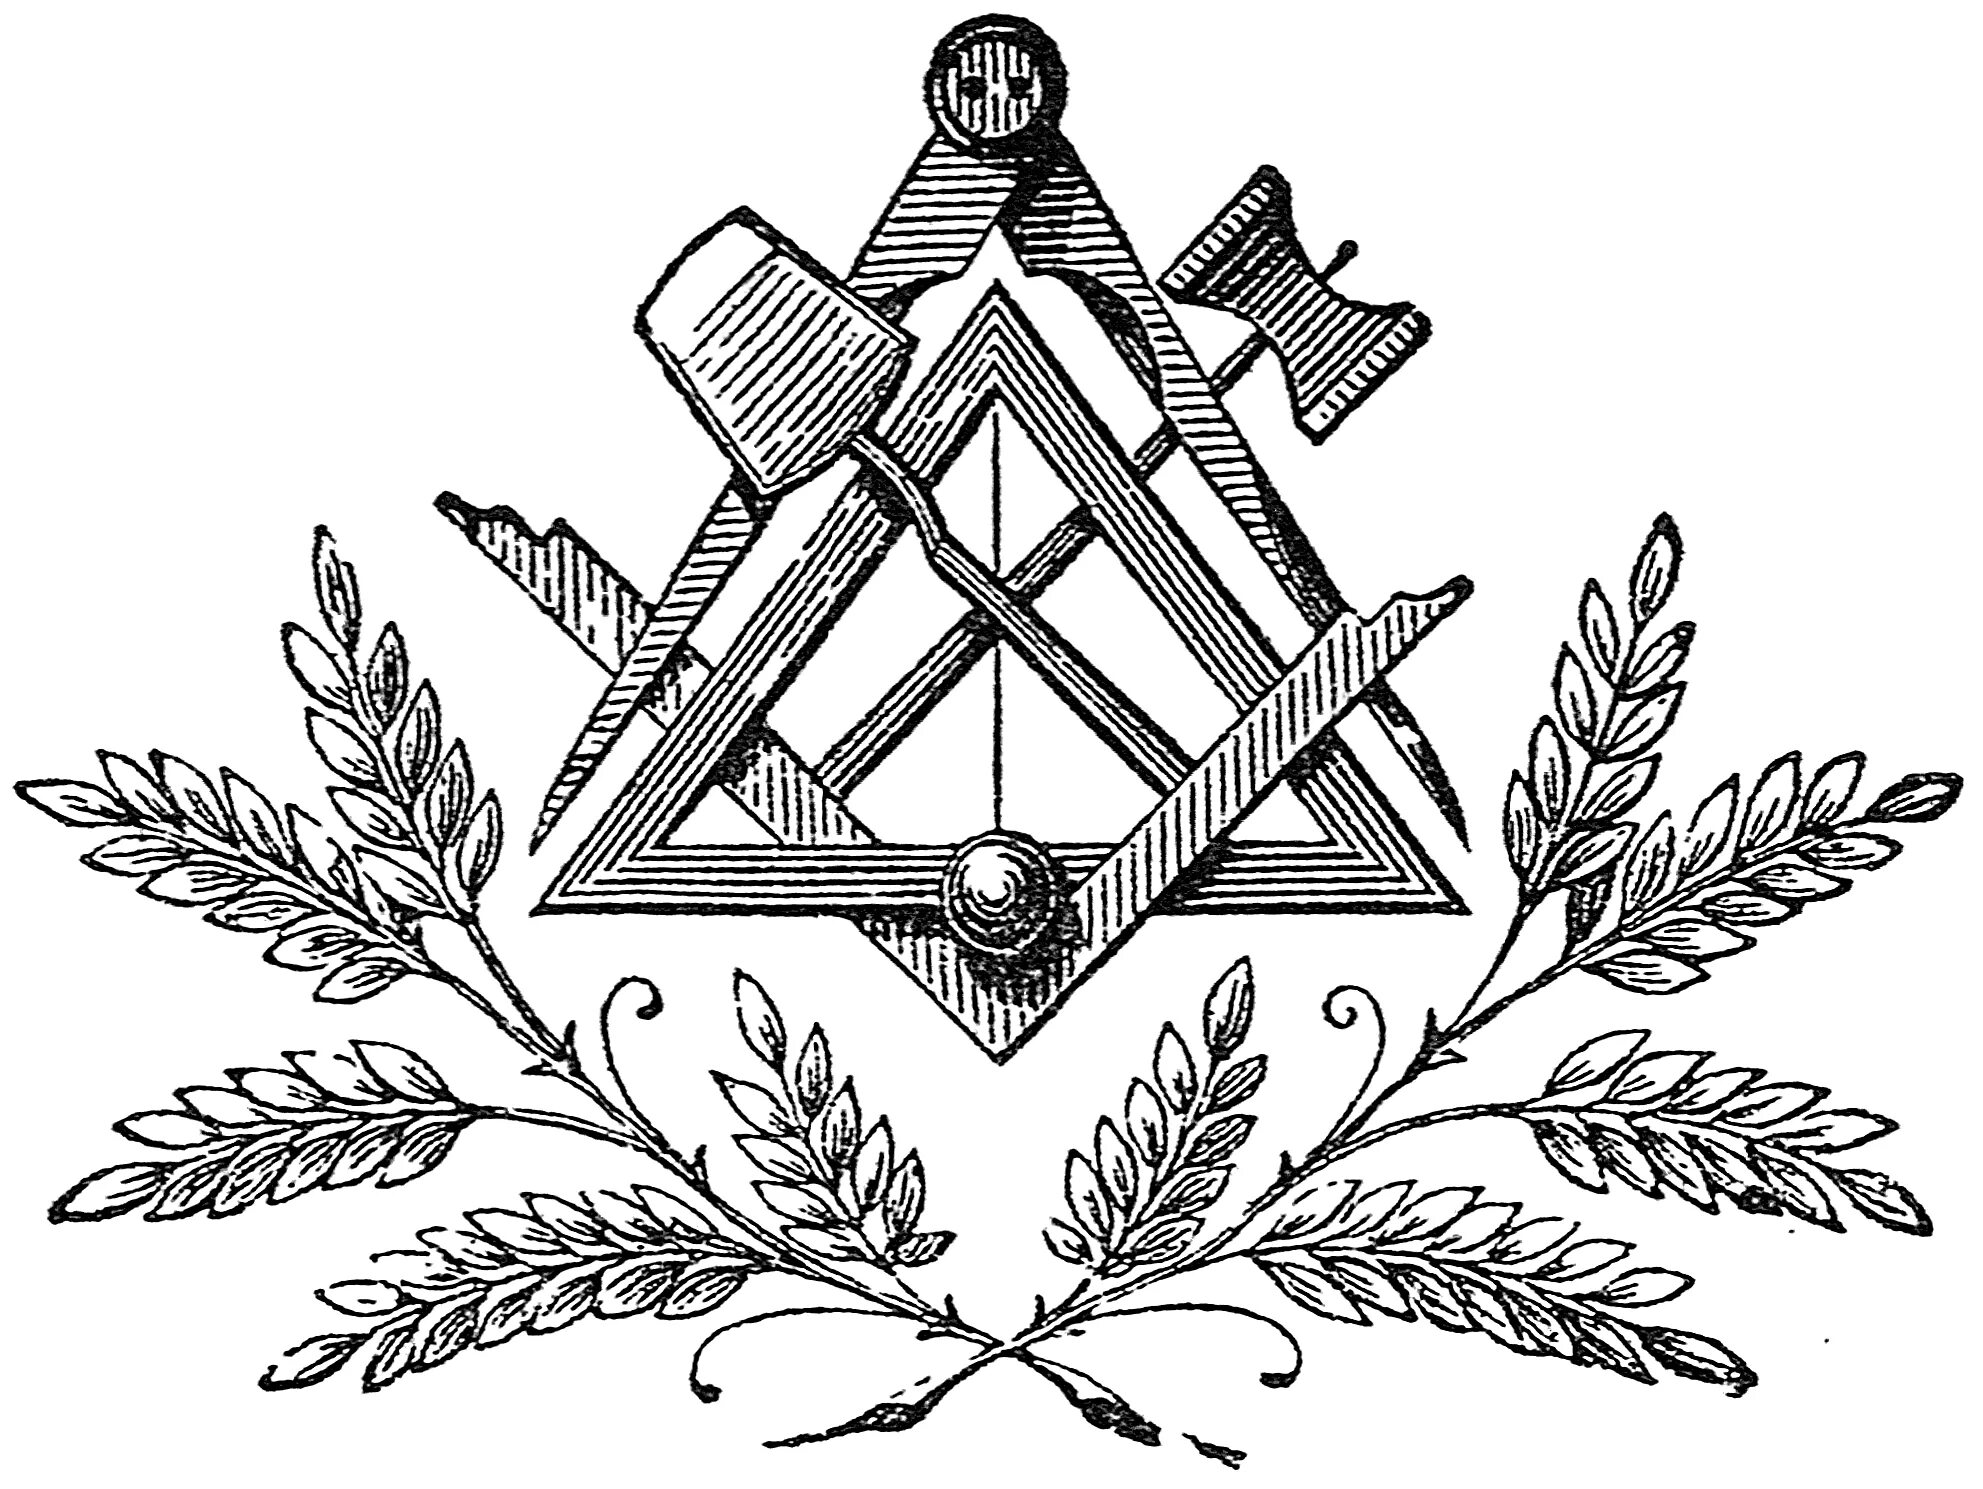 Символ вольных каменщиков масонов. Герб масонской ложи. Франкмасоны - «вольные каменщики».